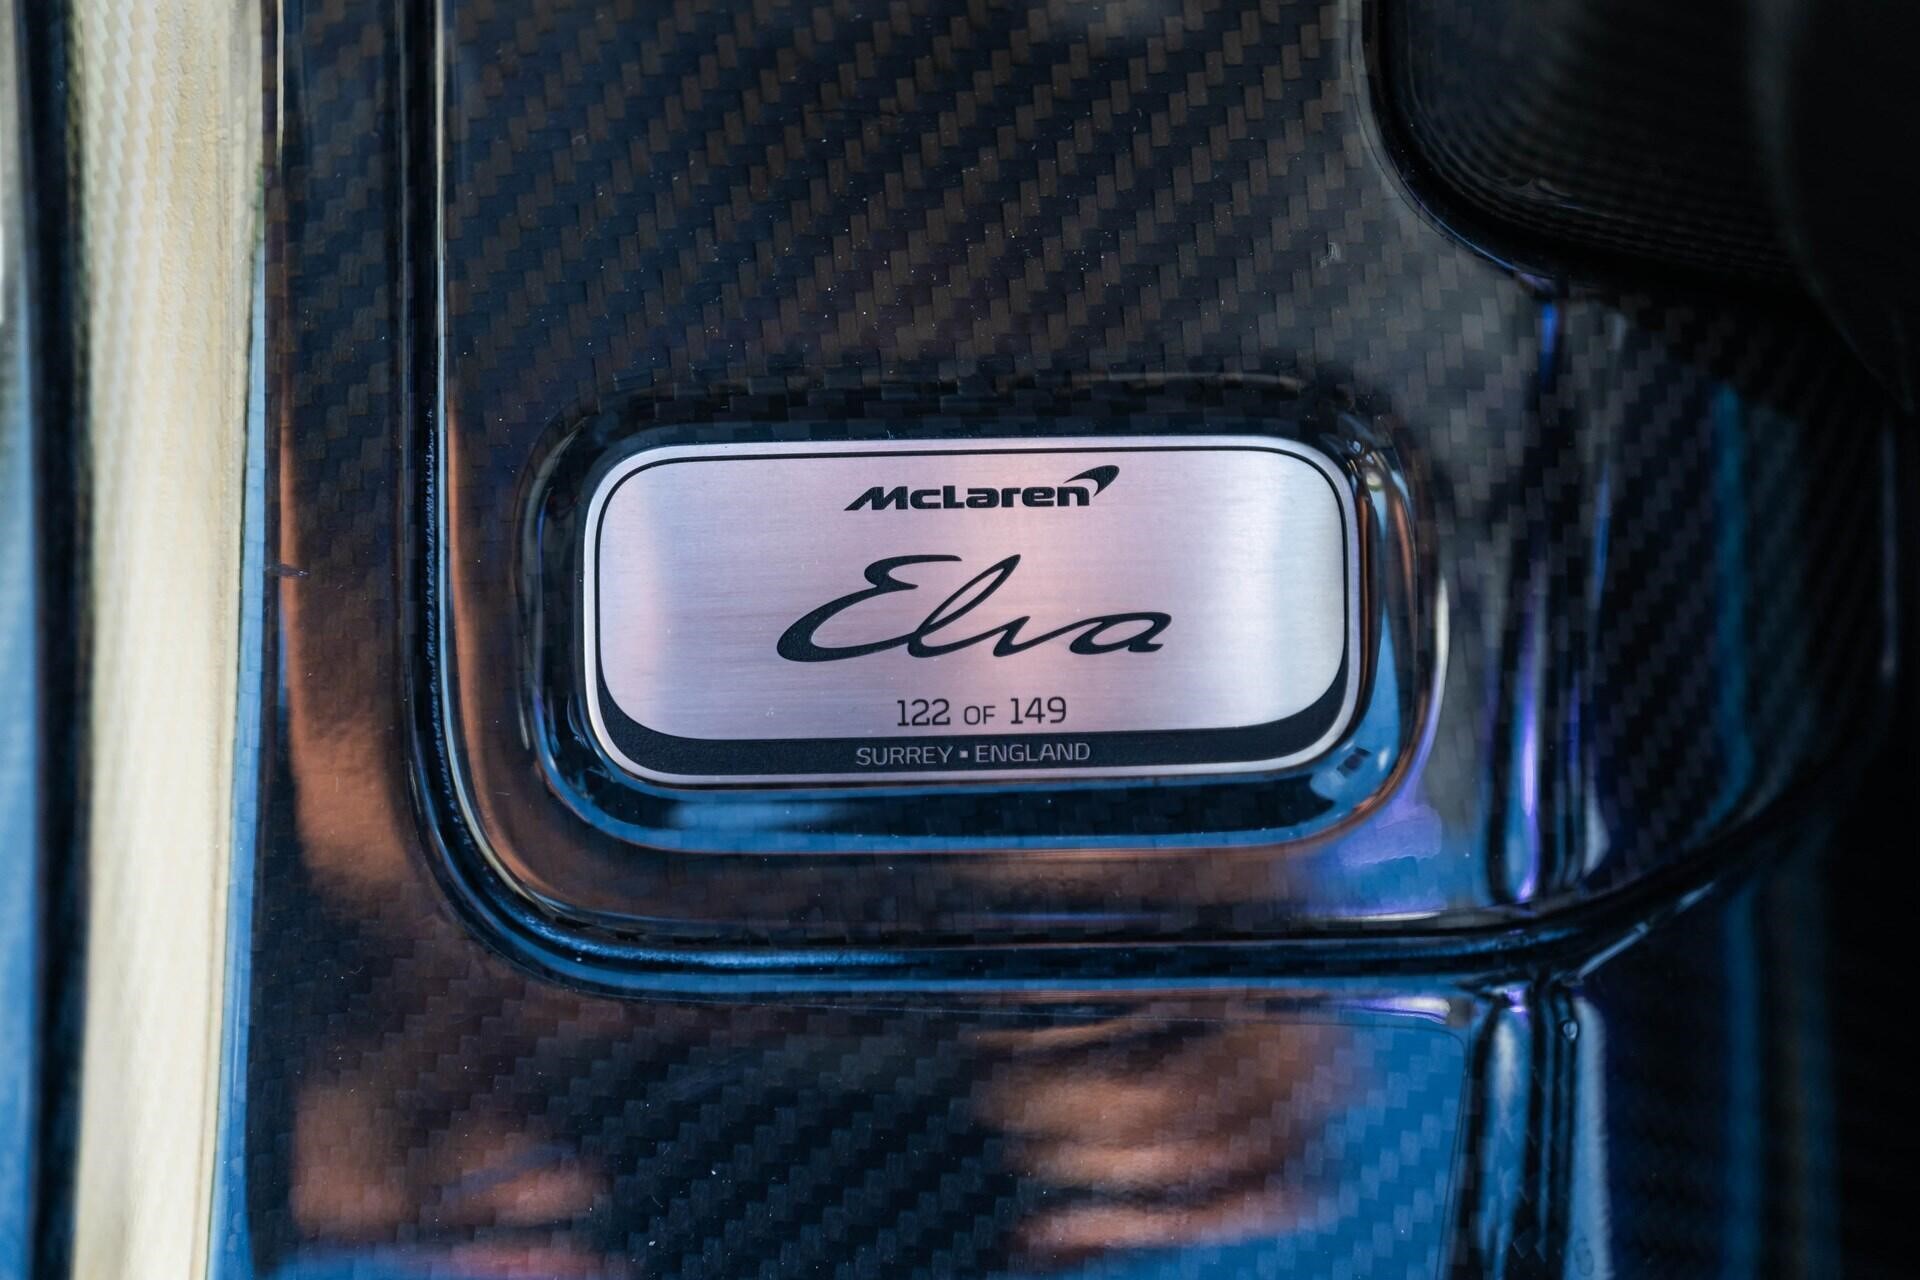 Image showing the serial number plaque of a purple 2021 McLaren Elva